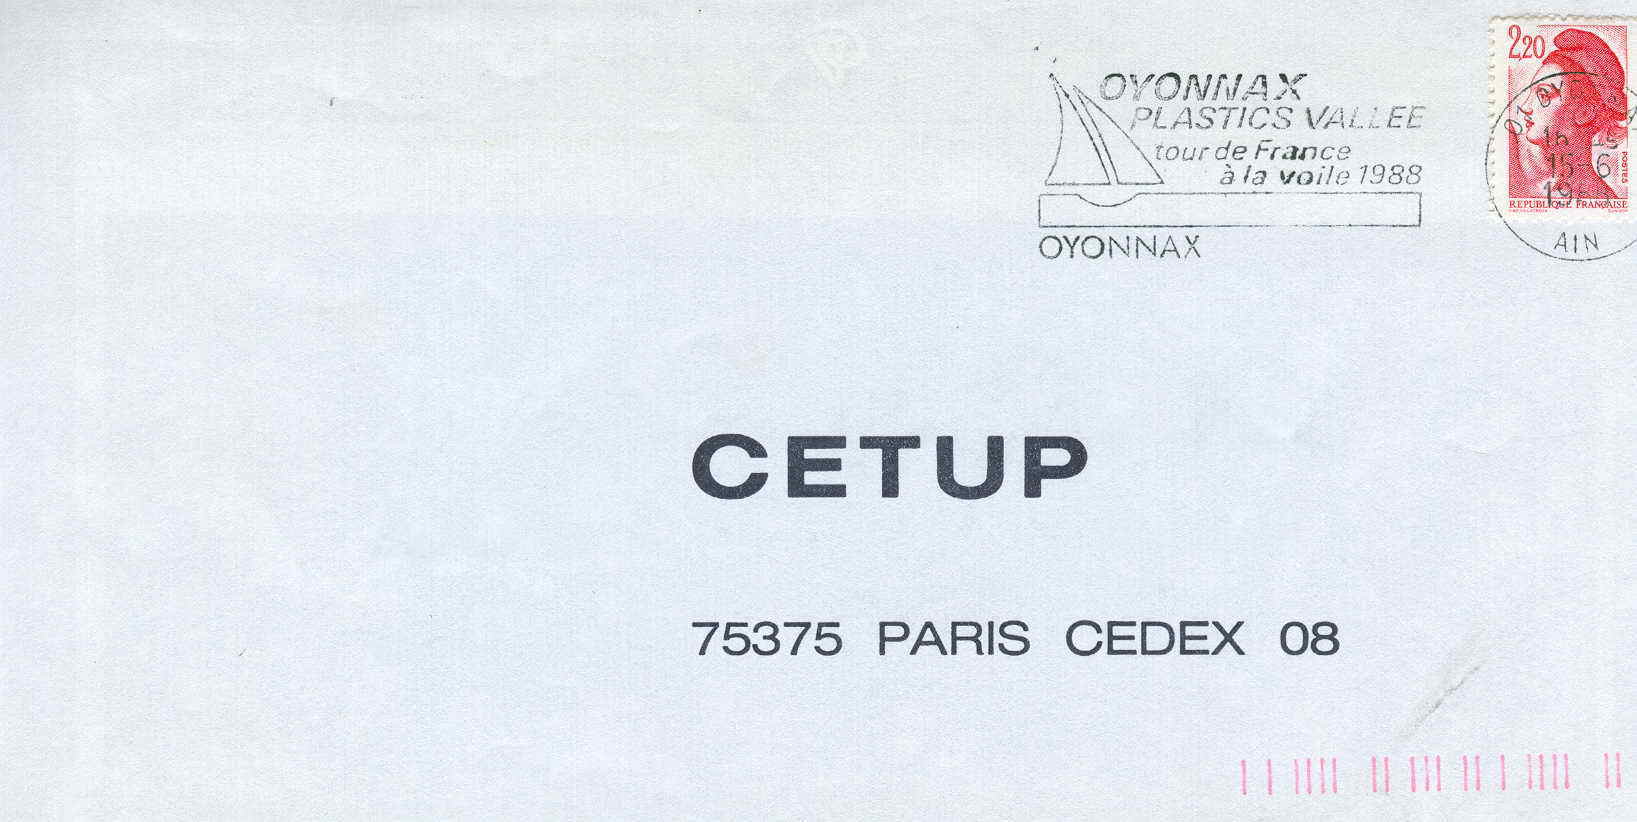 VOILE OBLITERATION TEMPORAIRE TOUR DE FRANCE A LA VOILE 1988 OYONNAX - Voile